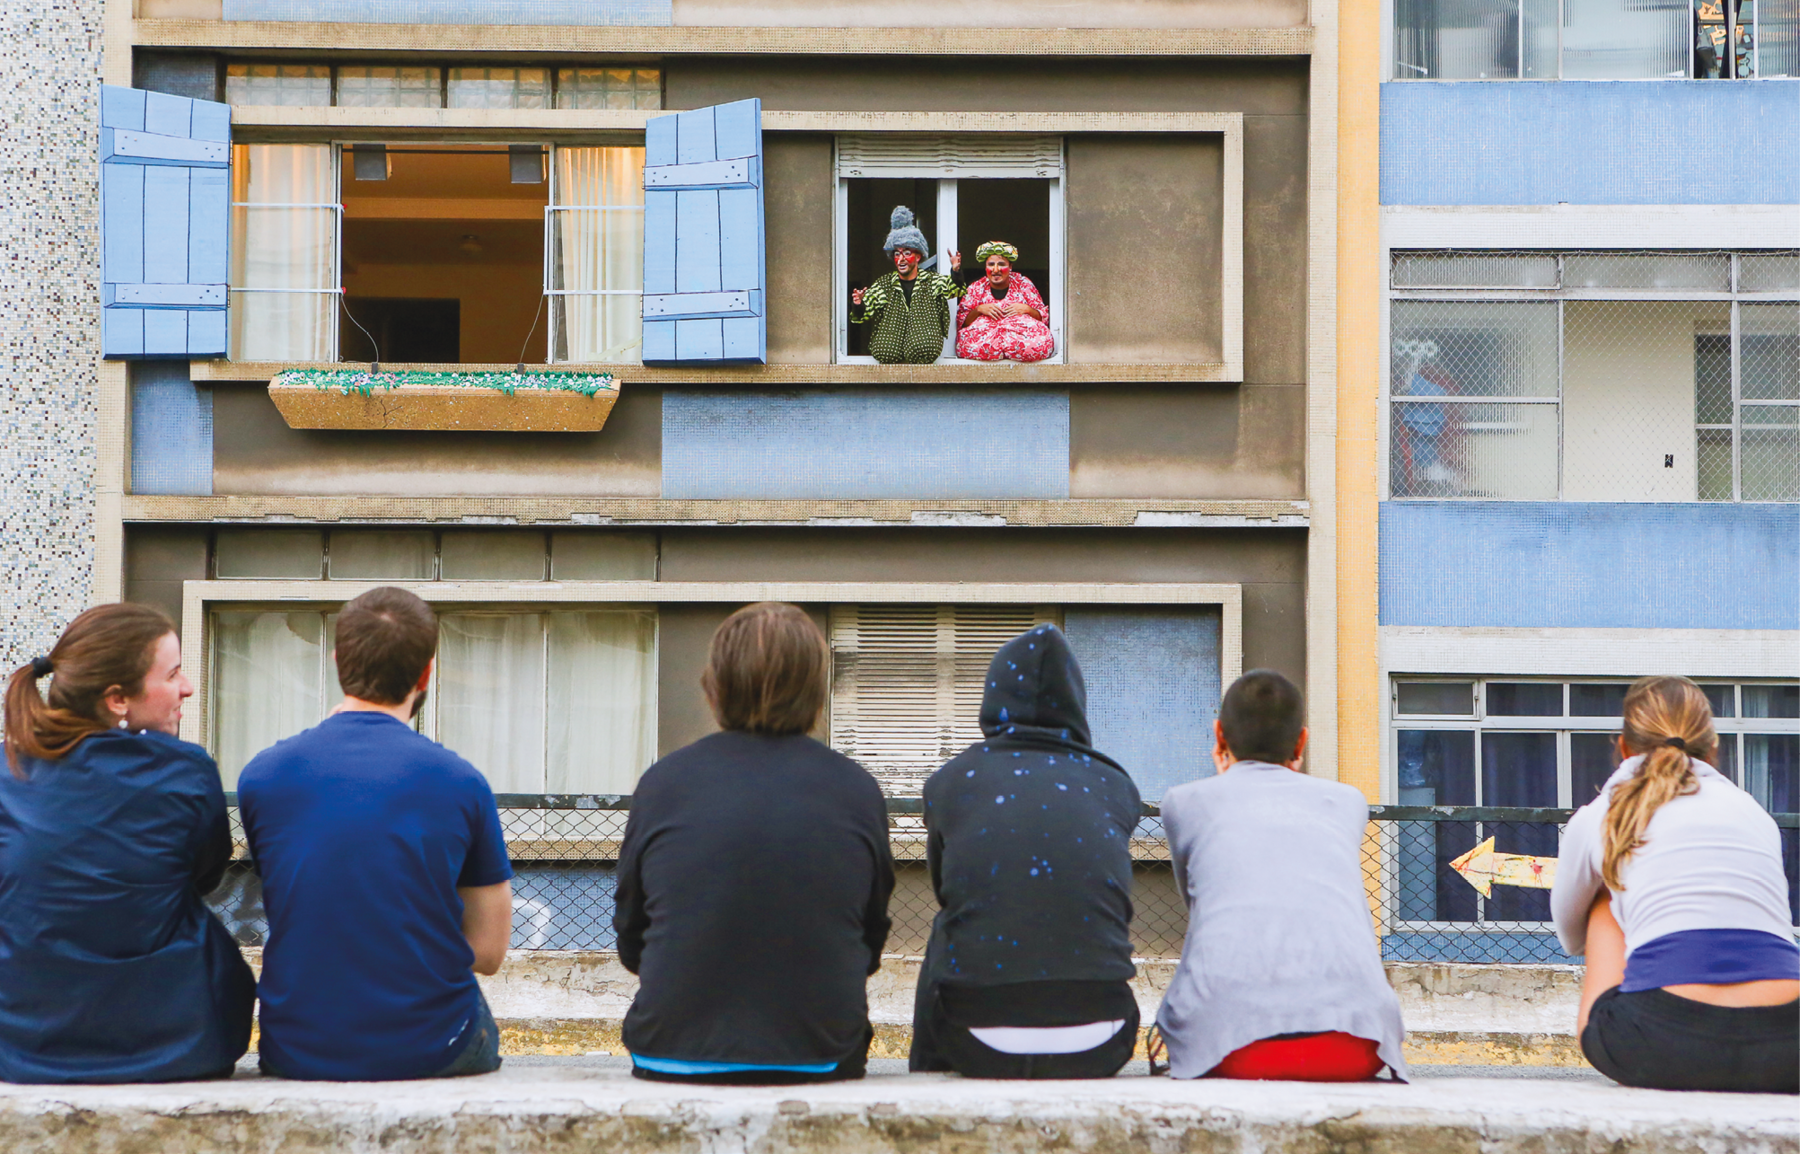 Fotografia. Em primeiro plano, pessoas sentadas em uma mureta, de costas, assistem a um espetáculo. Ao fundo, prédios com janelas. Em uma das janelas abertas, um homem e uma mulher com fantasias se comunicam com os espectadores.